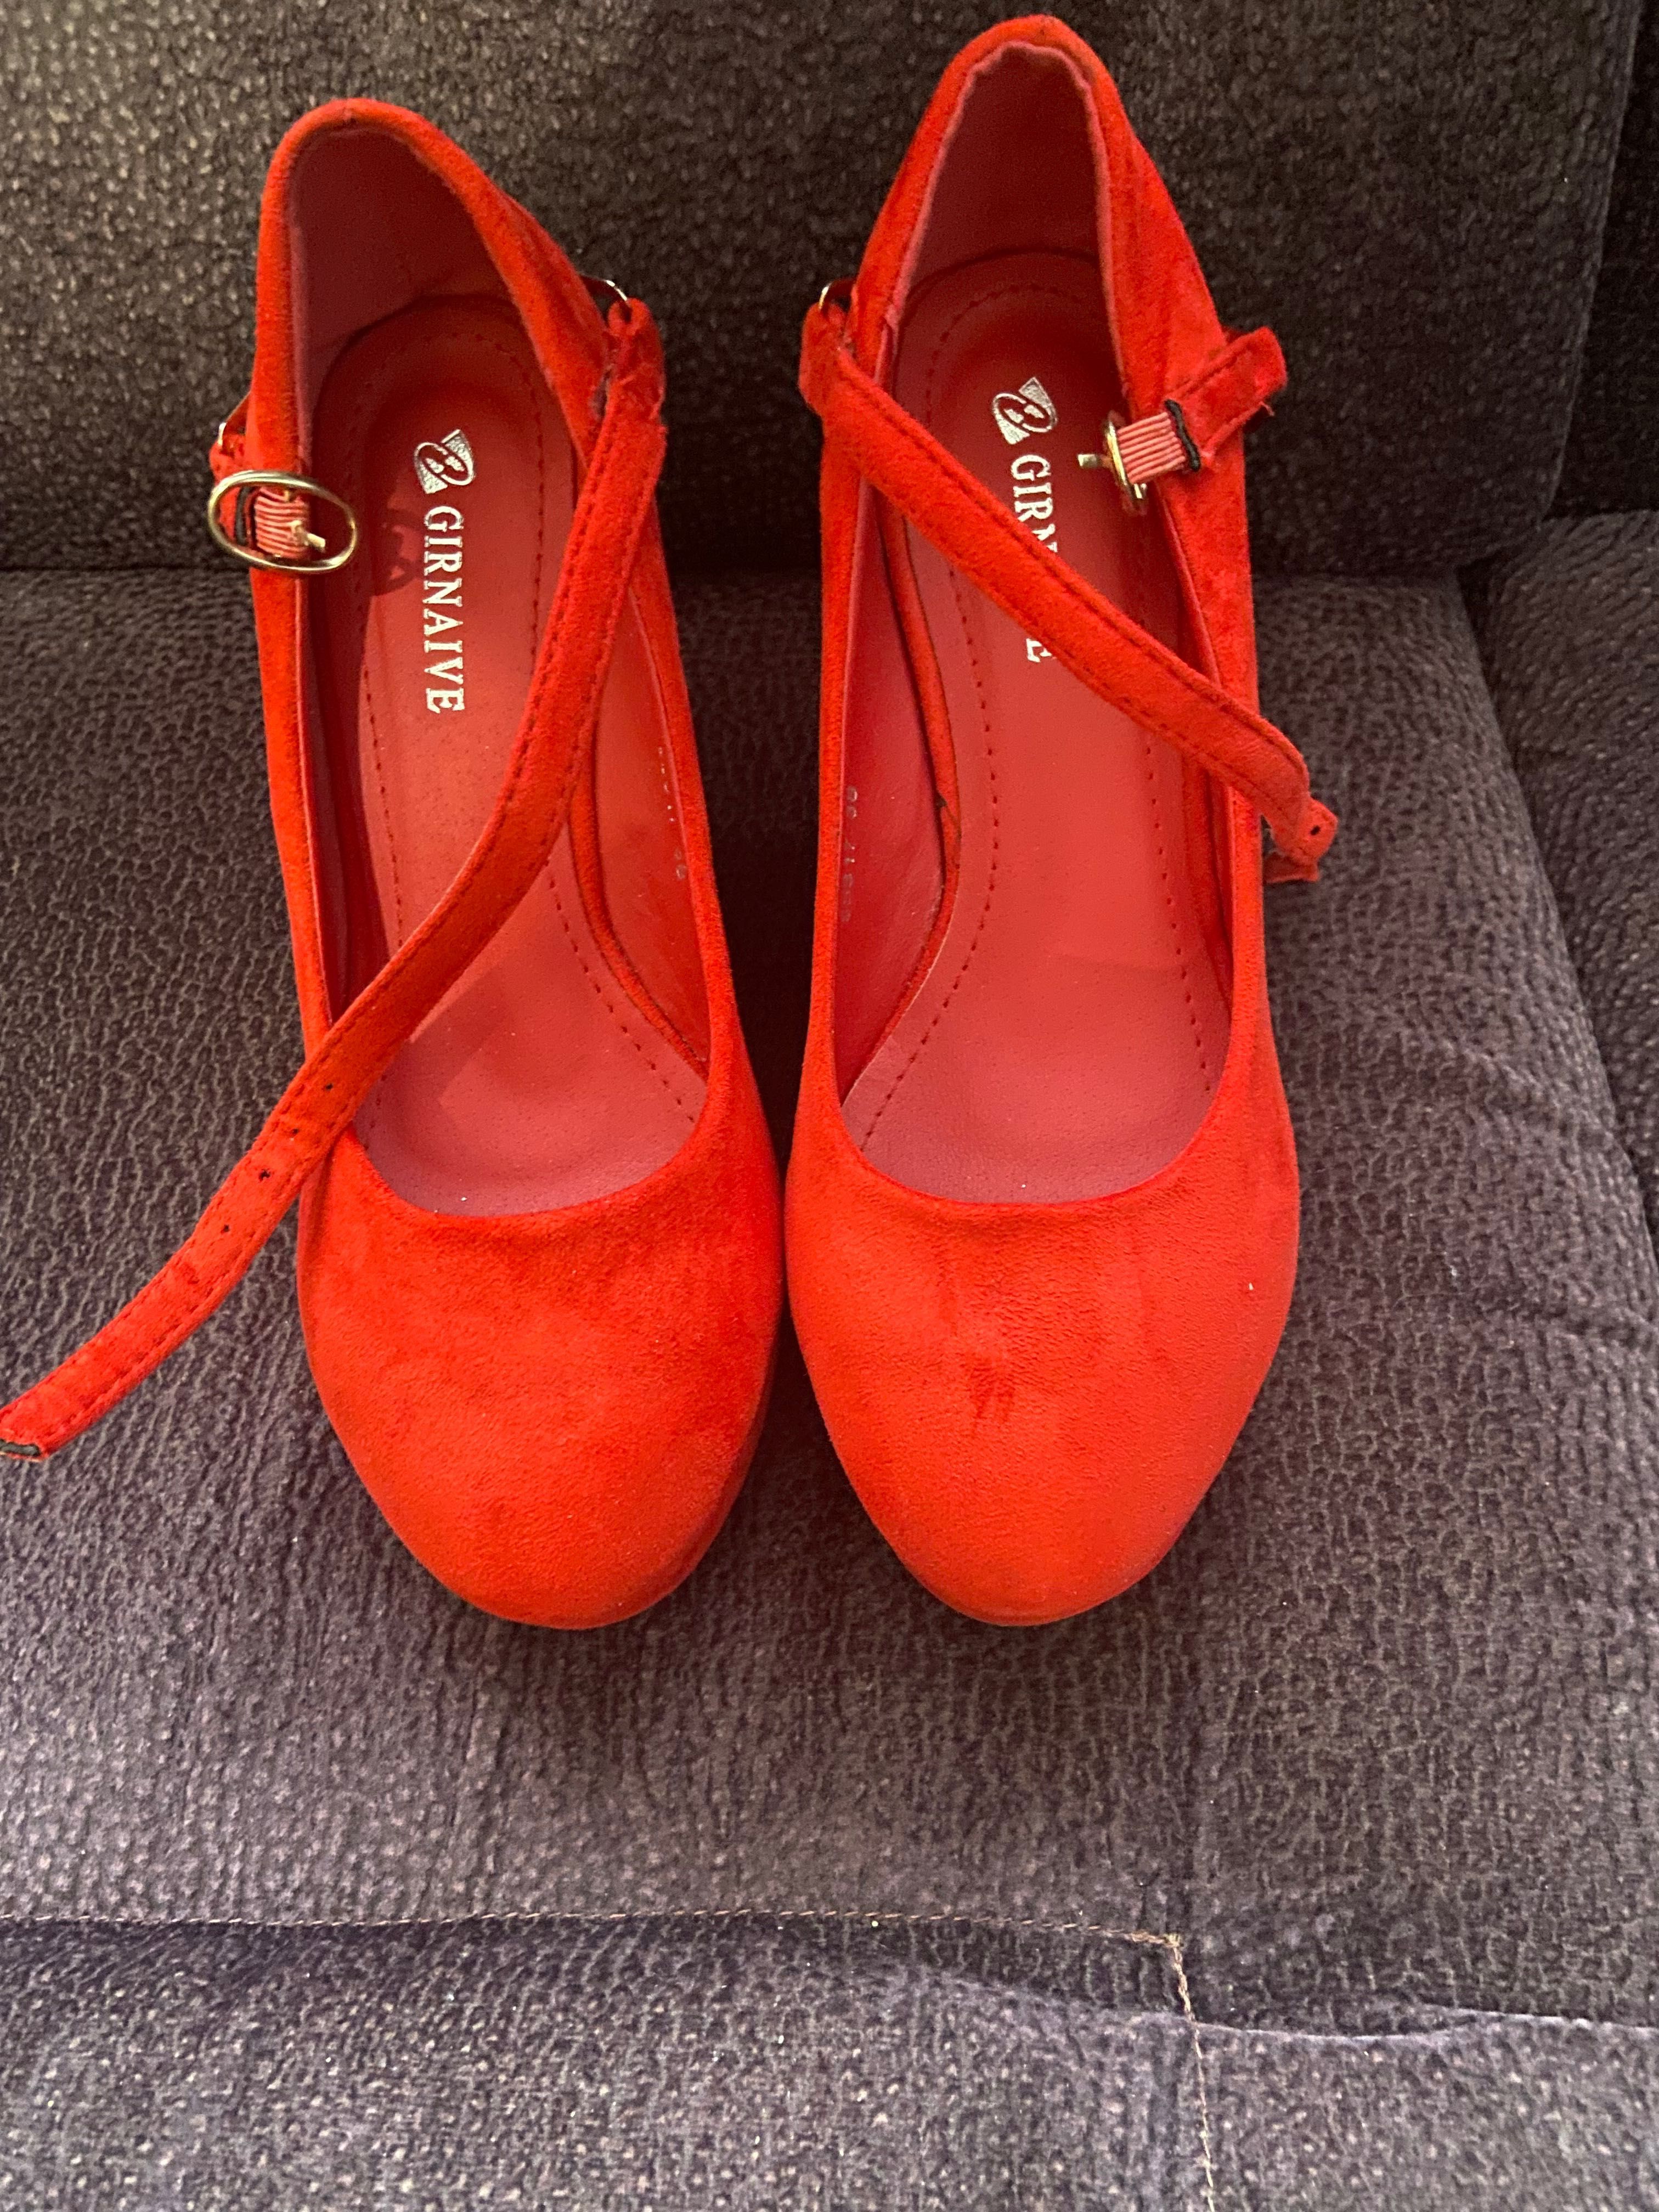 Продам червоні черевички / красные туфли